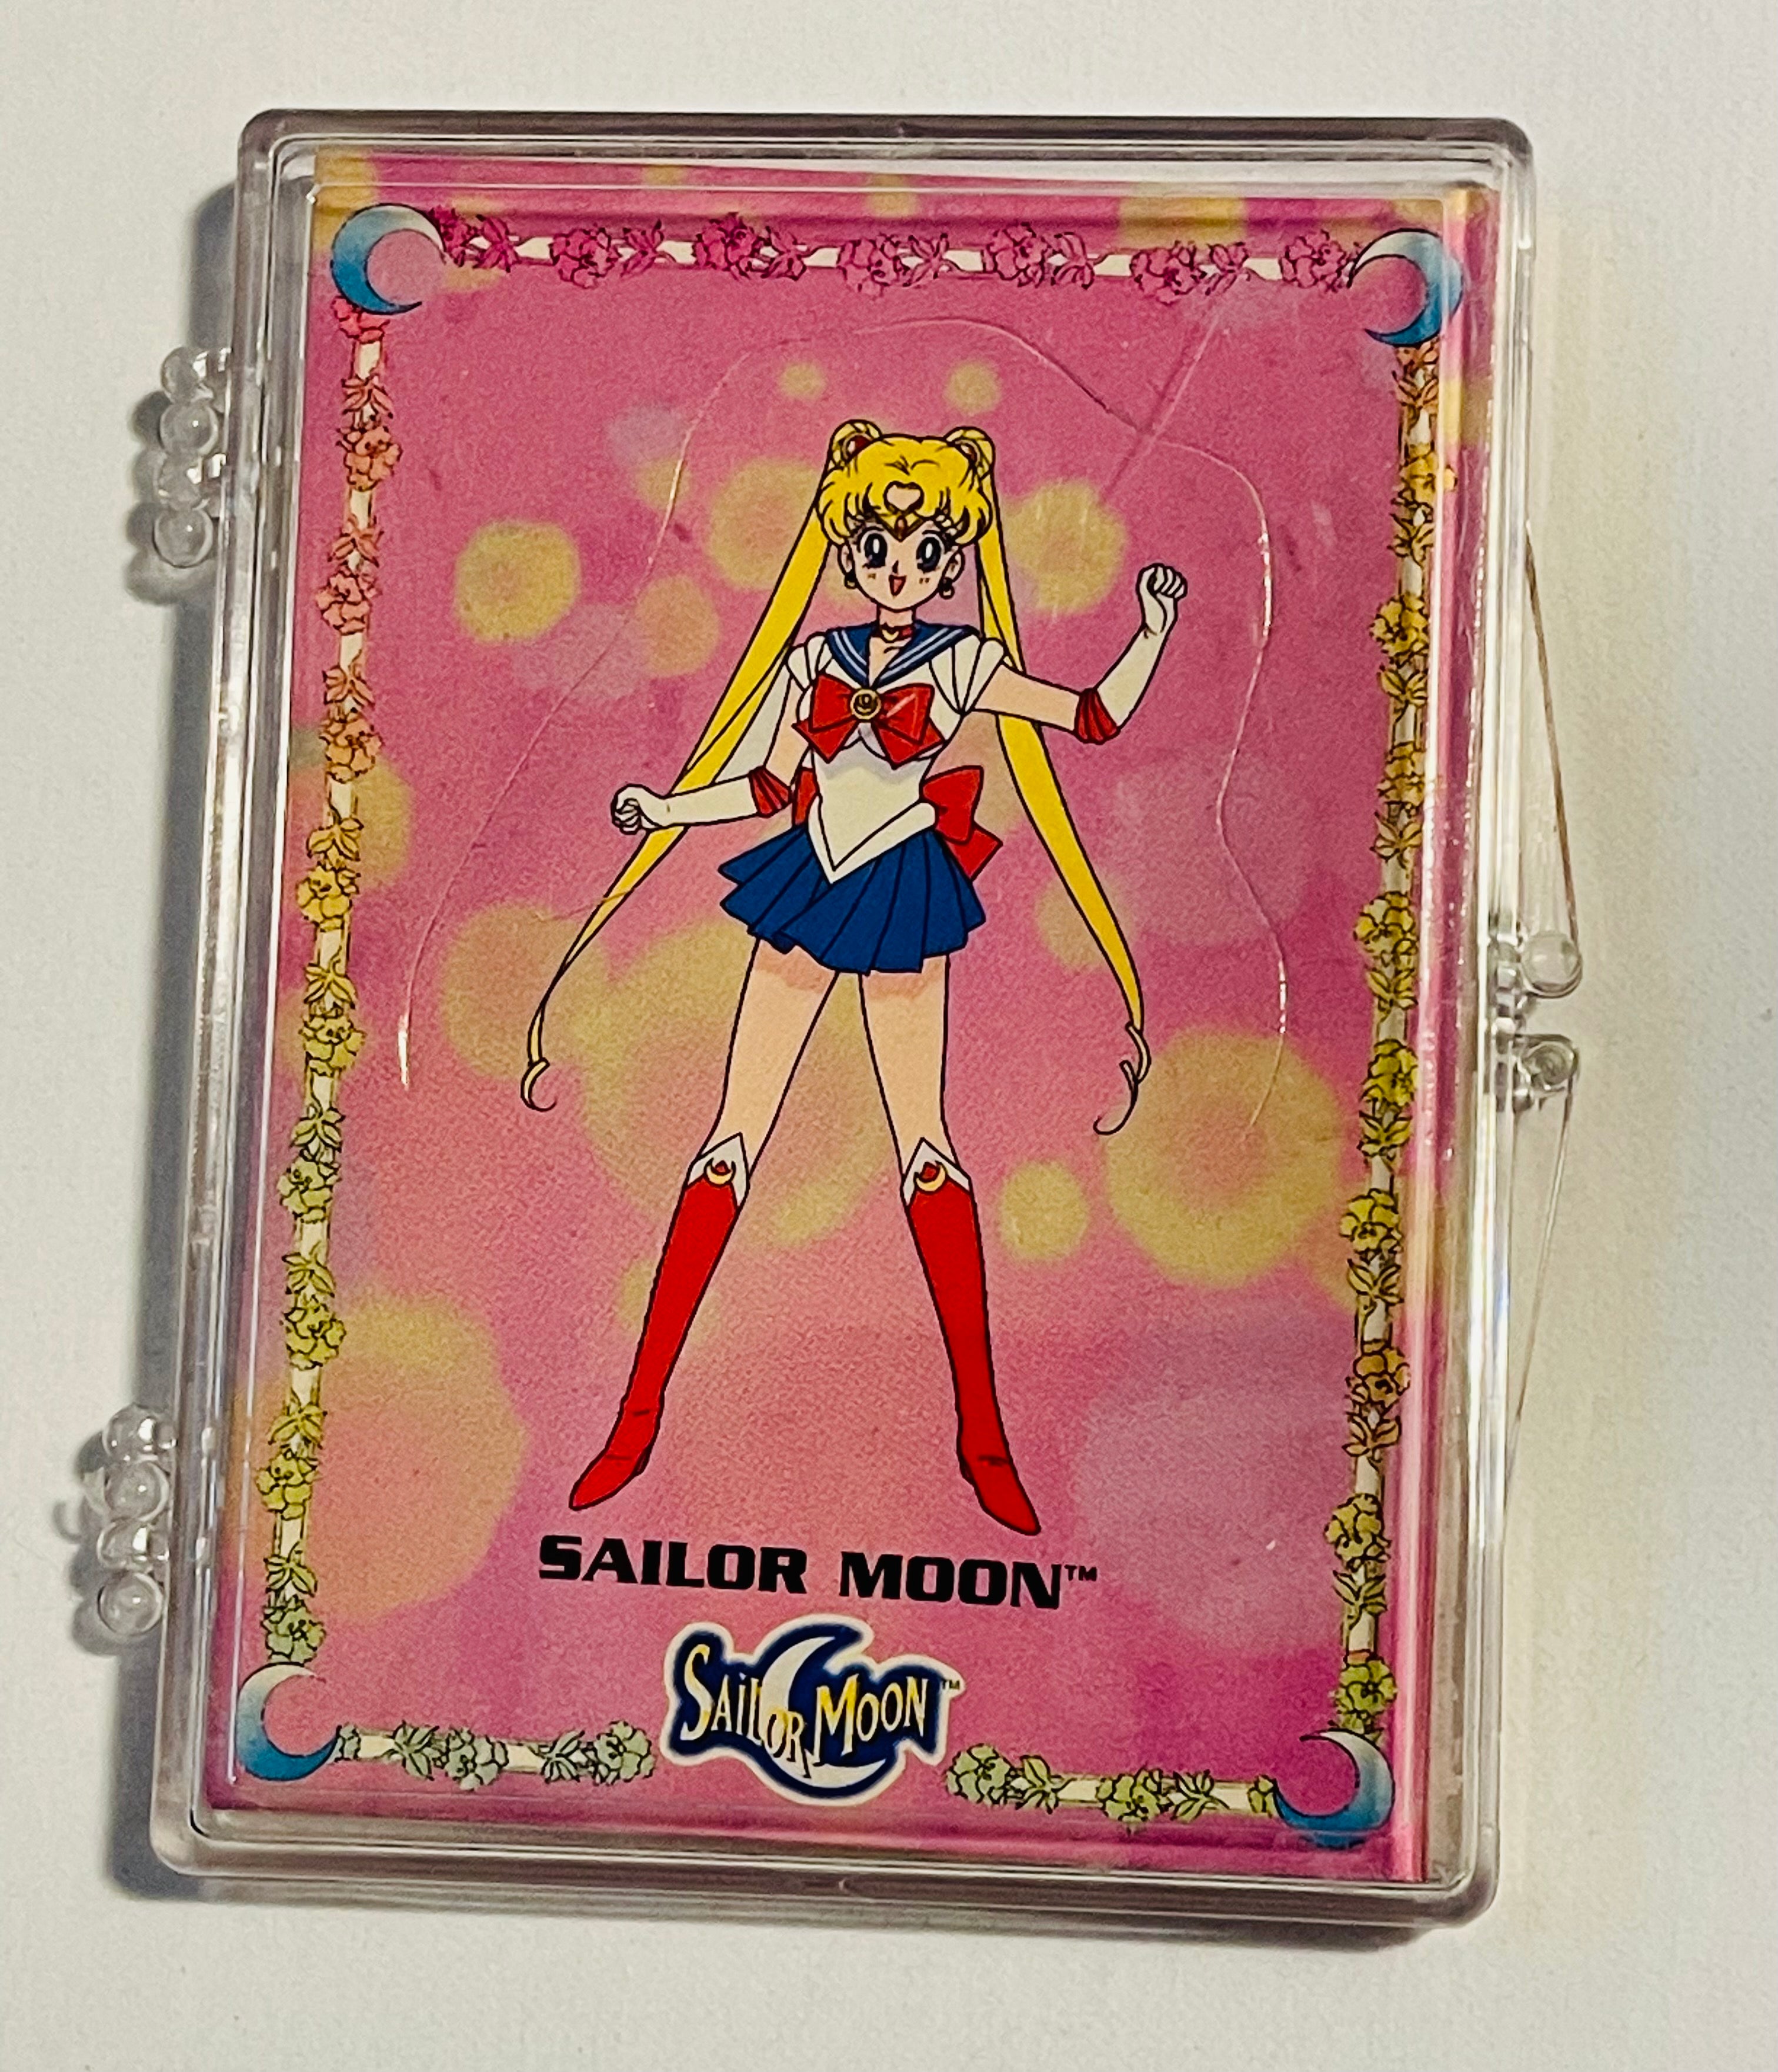 Sailor Moon rare send away pop up cards set 1997